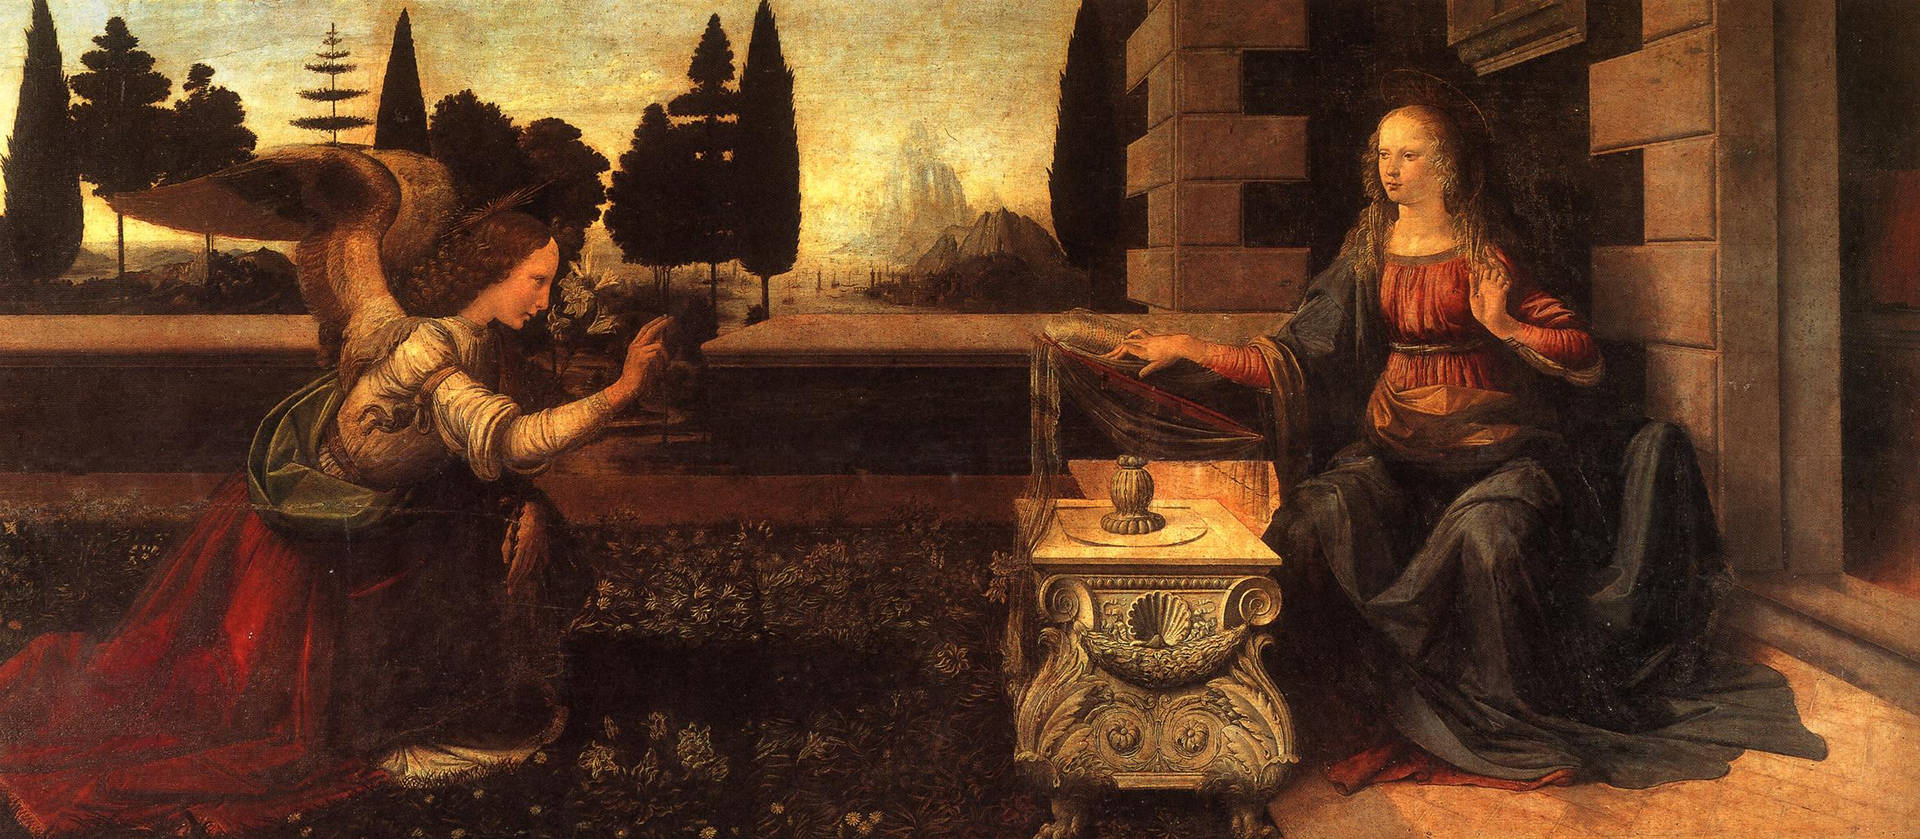 Annunciation By Leonardo Da Vinci Background